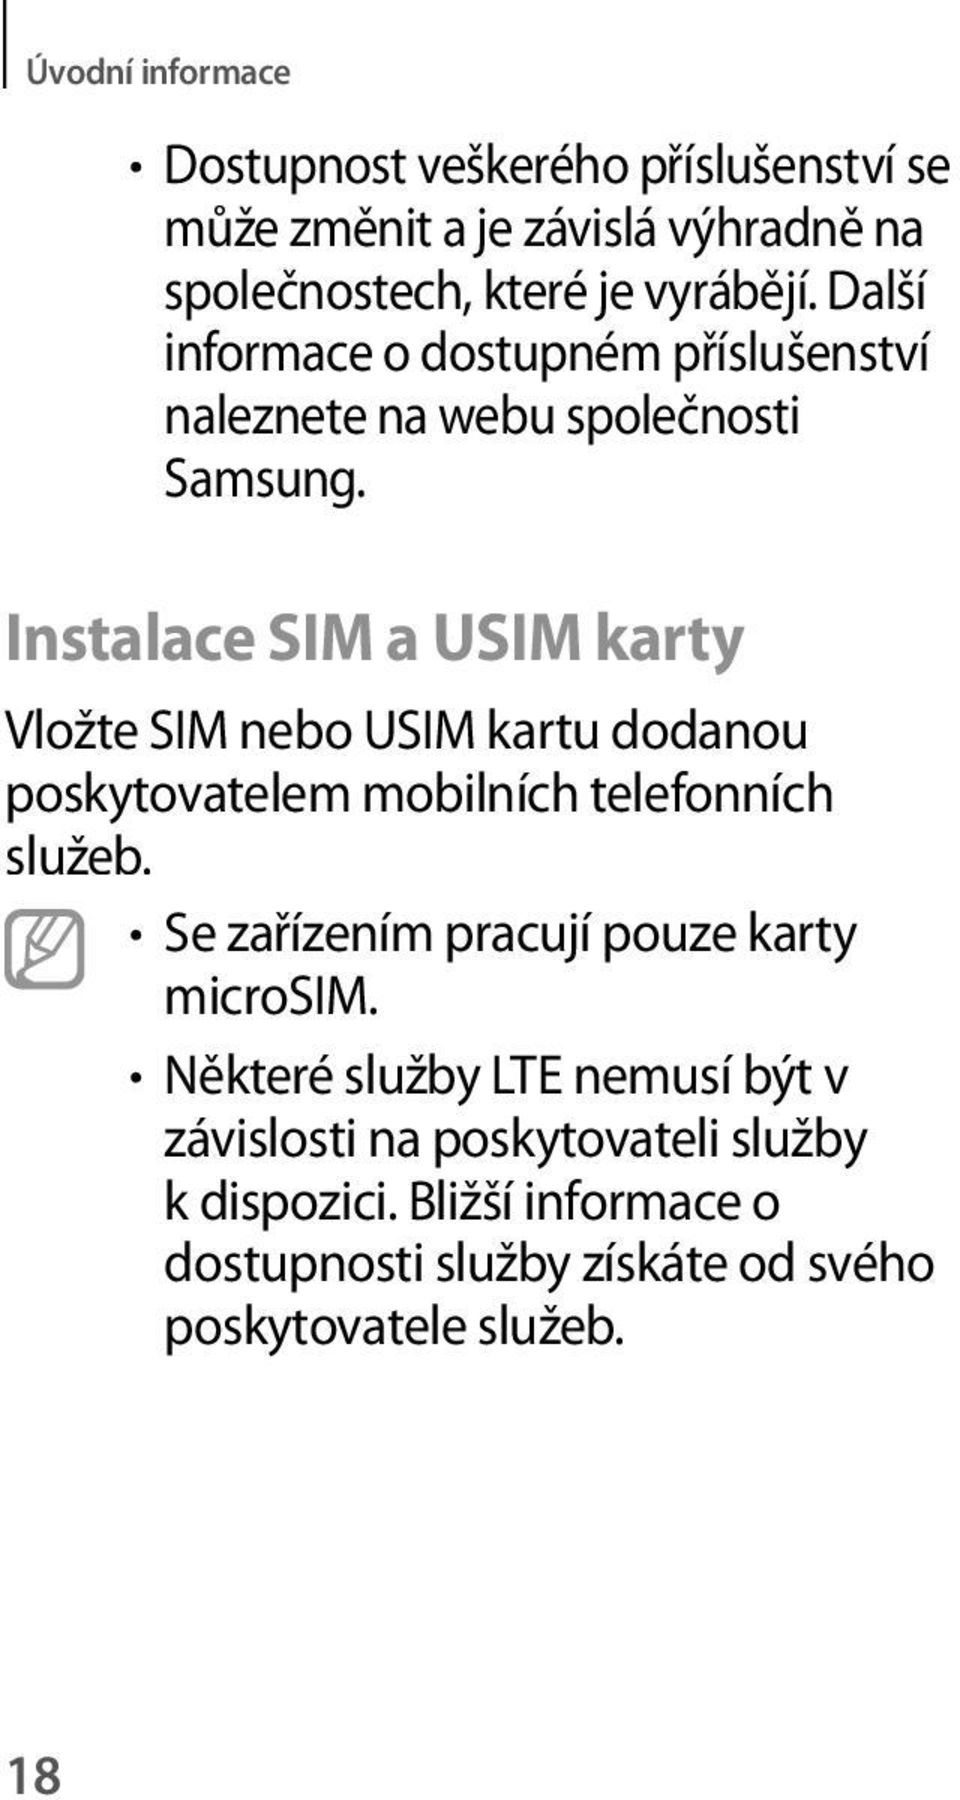 Instalace SIM a USIM karty Vložte SIM nebo USIM kartu dodanou poskytovatelem mobilních telefonních služeb.